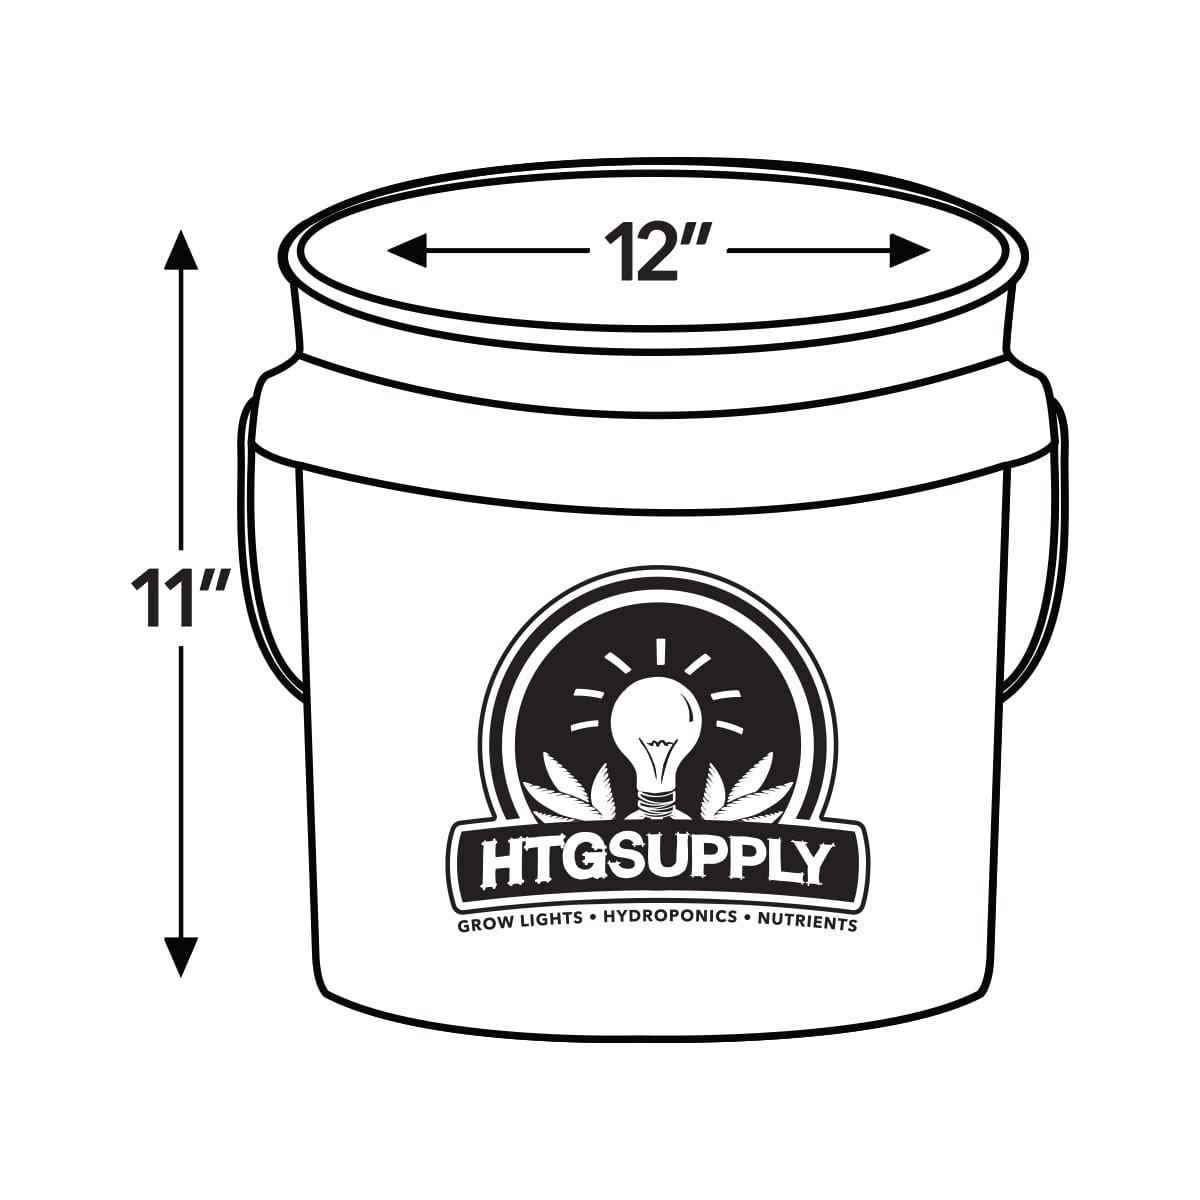 5 Gallon Bucket, Black - Aroma Grow Store